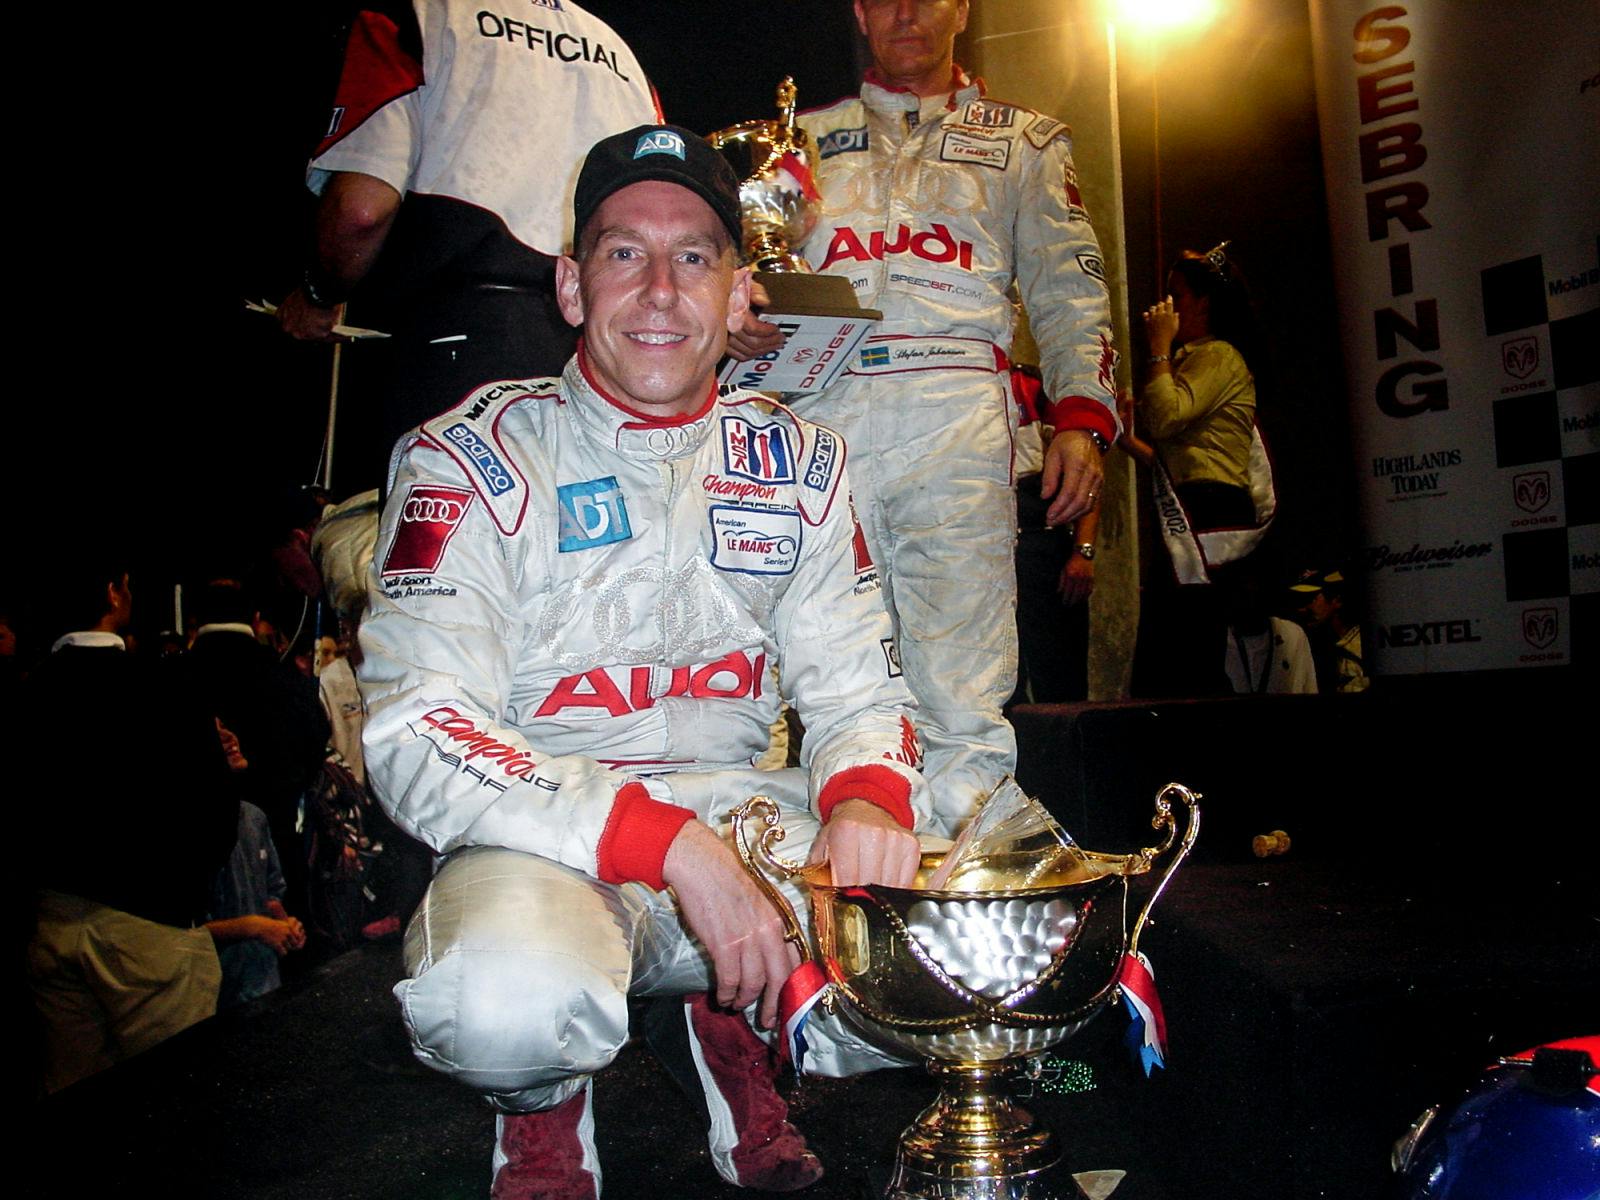 Die Auszeichnung würdigt die bemerkenswerte Rekordzahl von zehn Podiumsplätzen, die Wallace bei 19 Starts im 12-Stunden-Rennen von Sebring erringen konnte, darunter auch Siege in aufeinanderfolgenden Jahren (1992 und 1993) und fünf zweite Plätze.